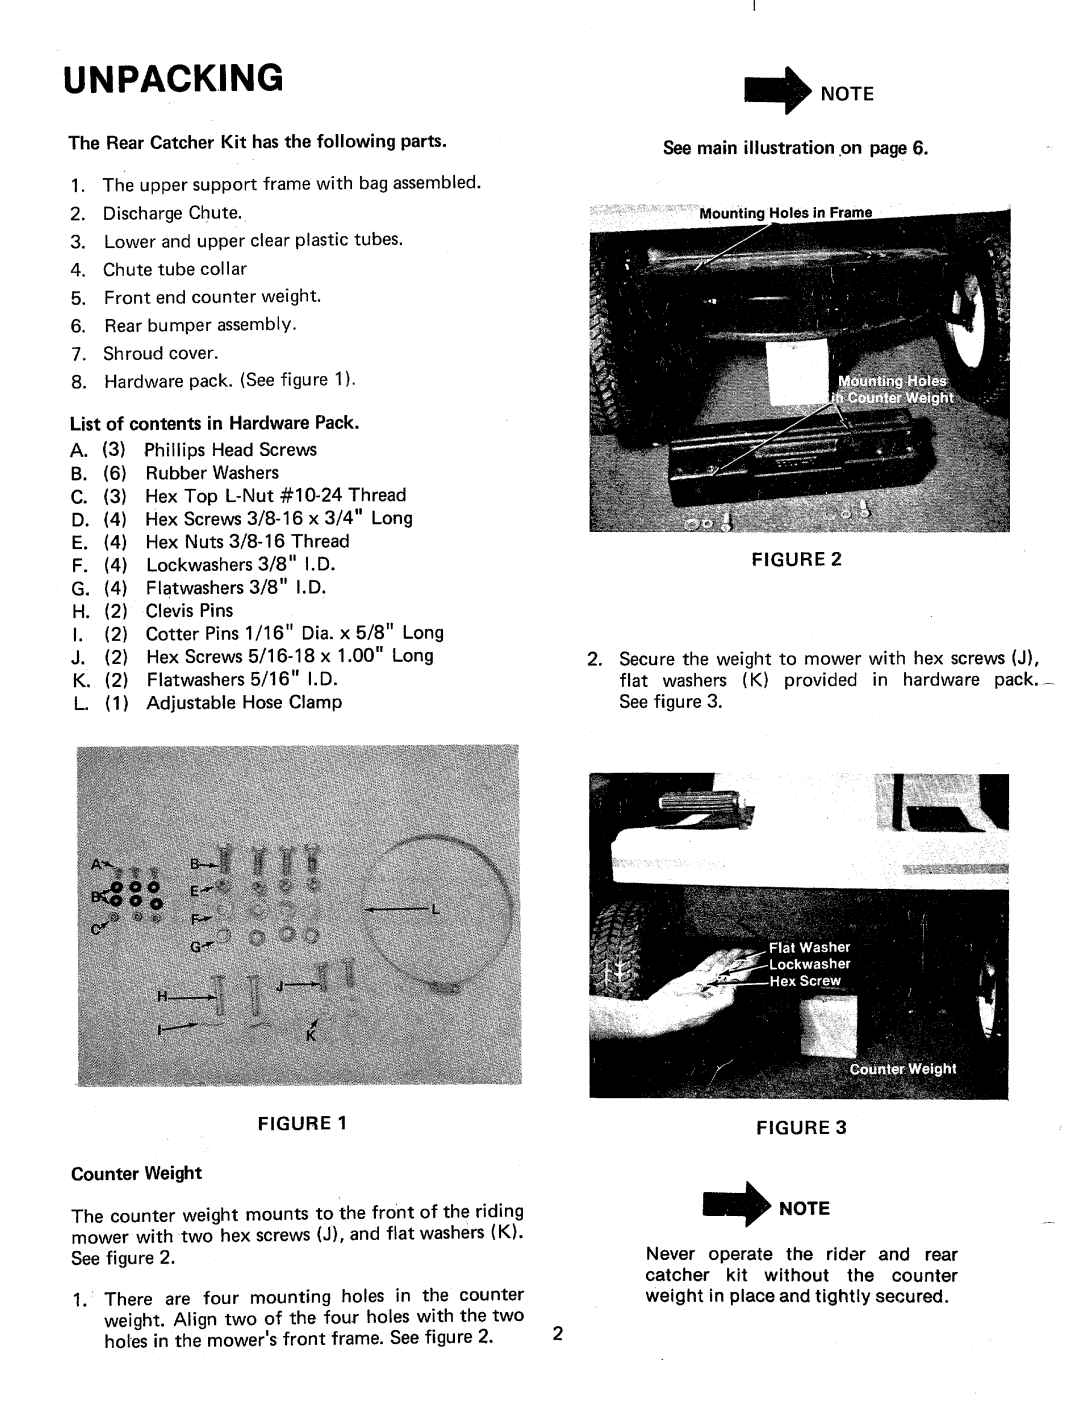 MTD 19021-0, 190-021A manual 